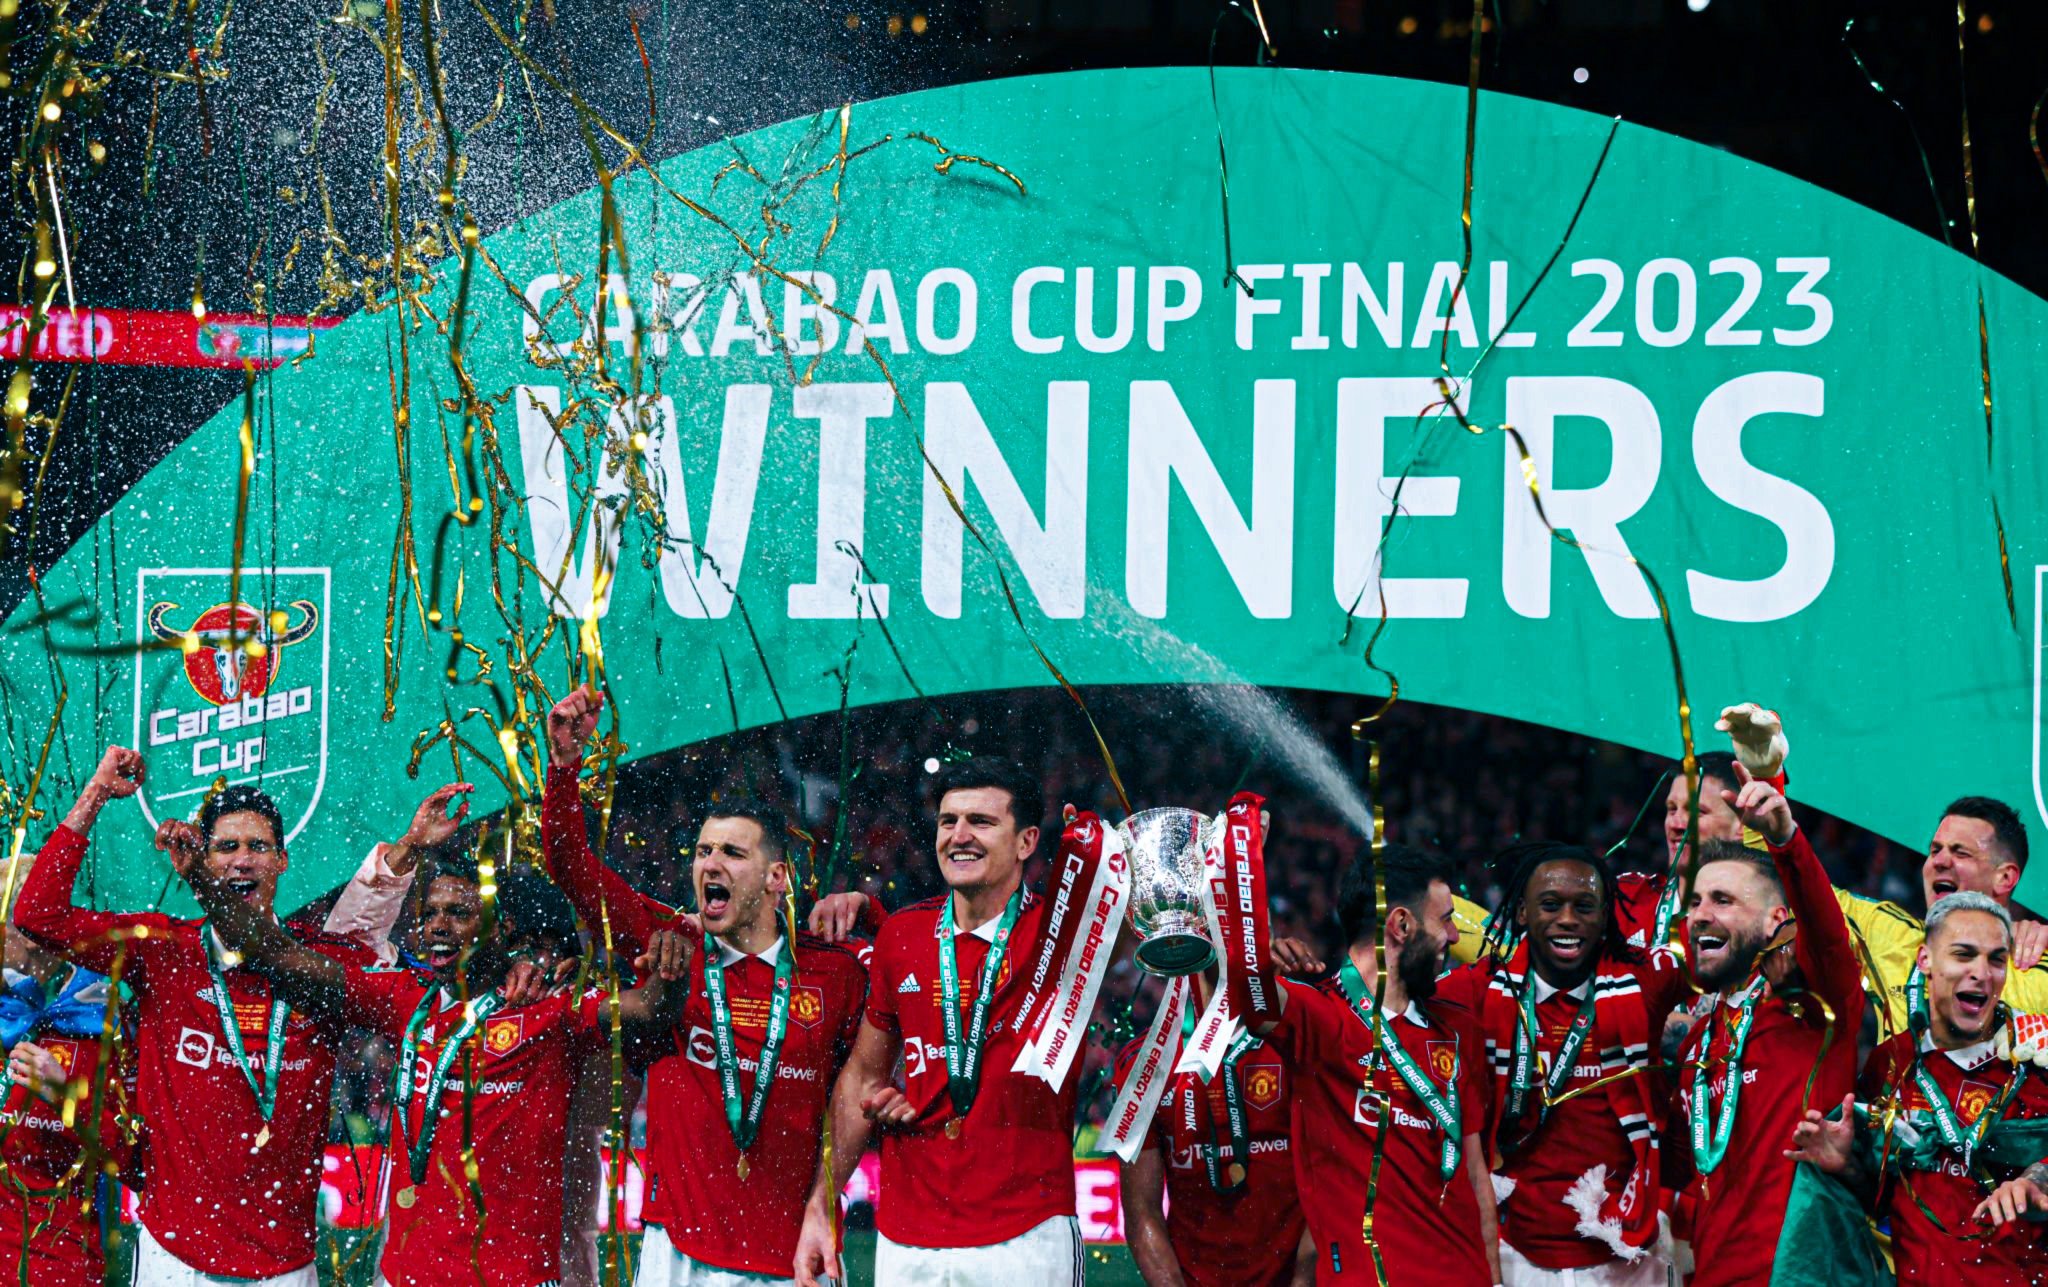 Man United won Carabao